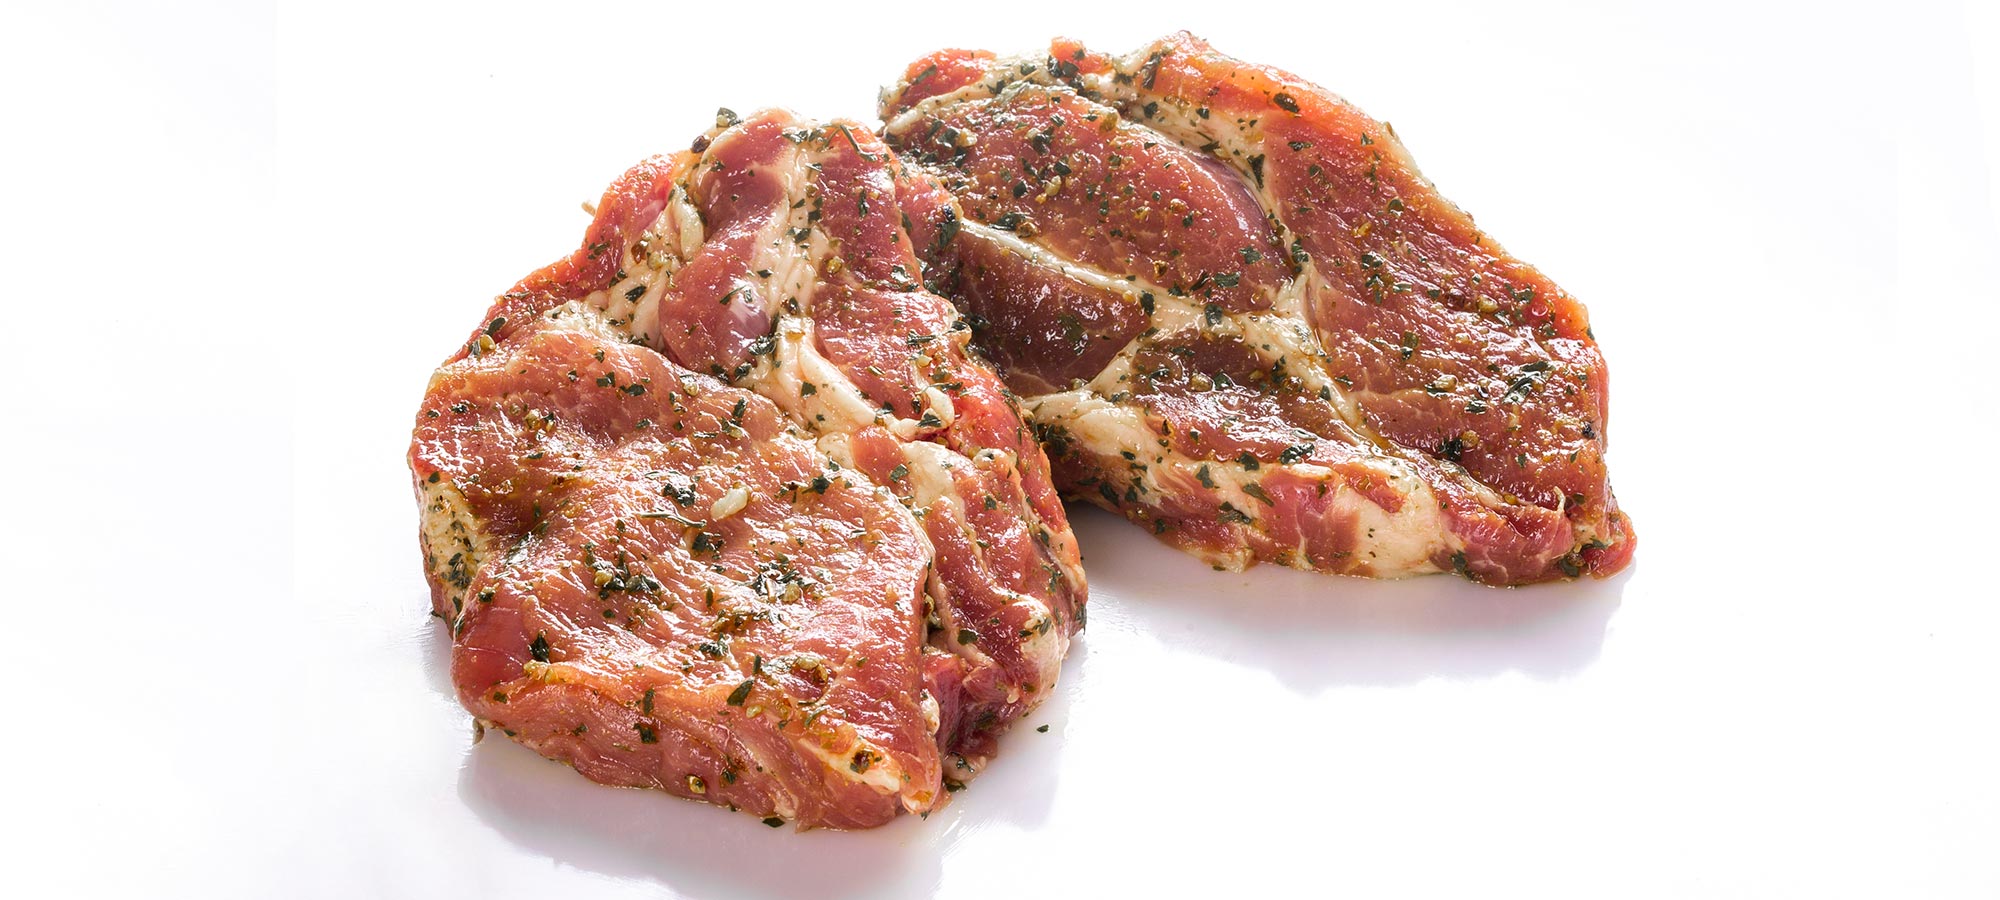 Hessisches-Landschwein-Steaks